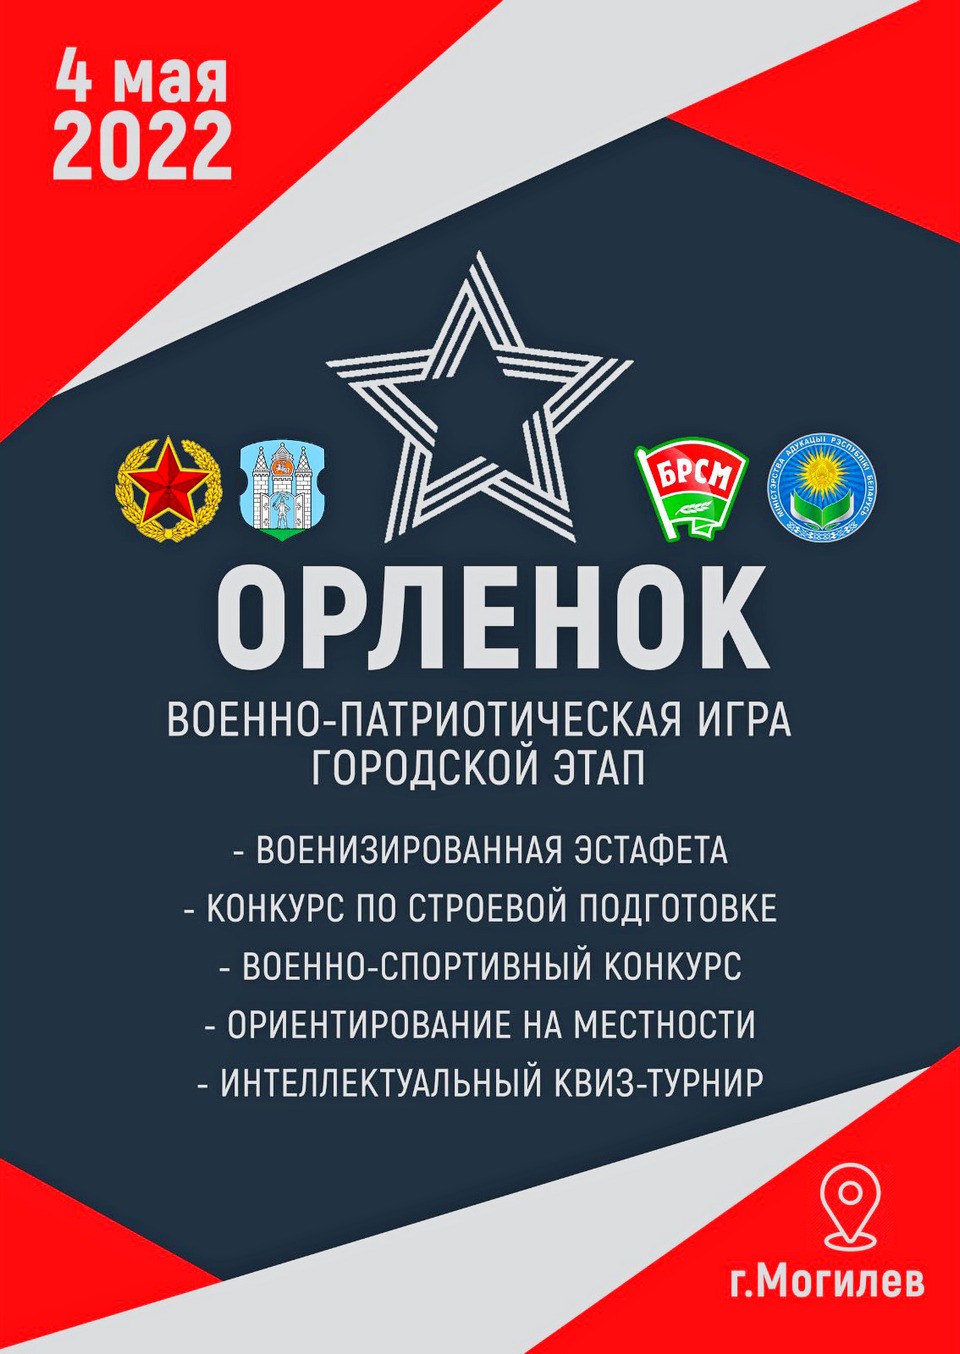 Городской этап военно-патриотической игры «Орленок» пройдет в Могилеве 4 мая   